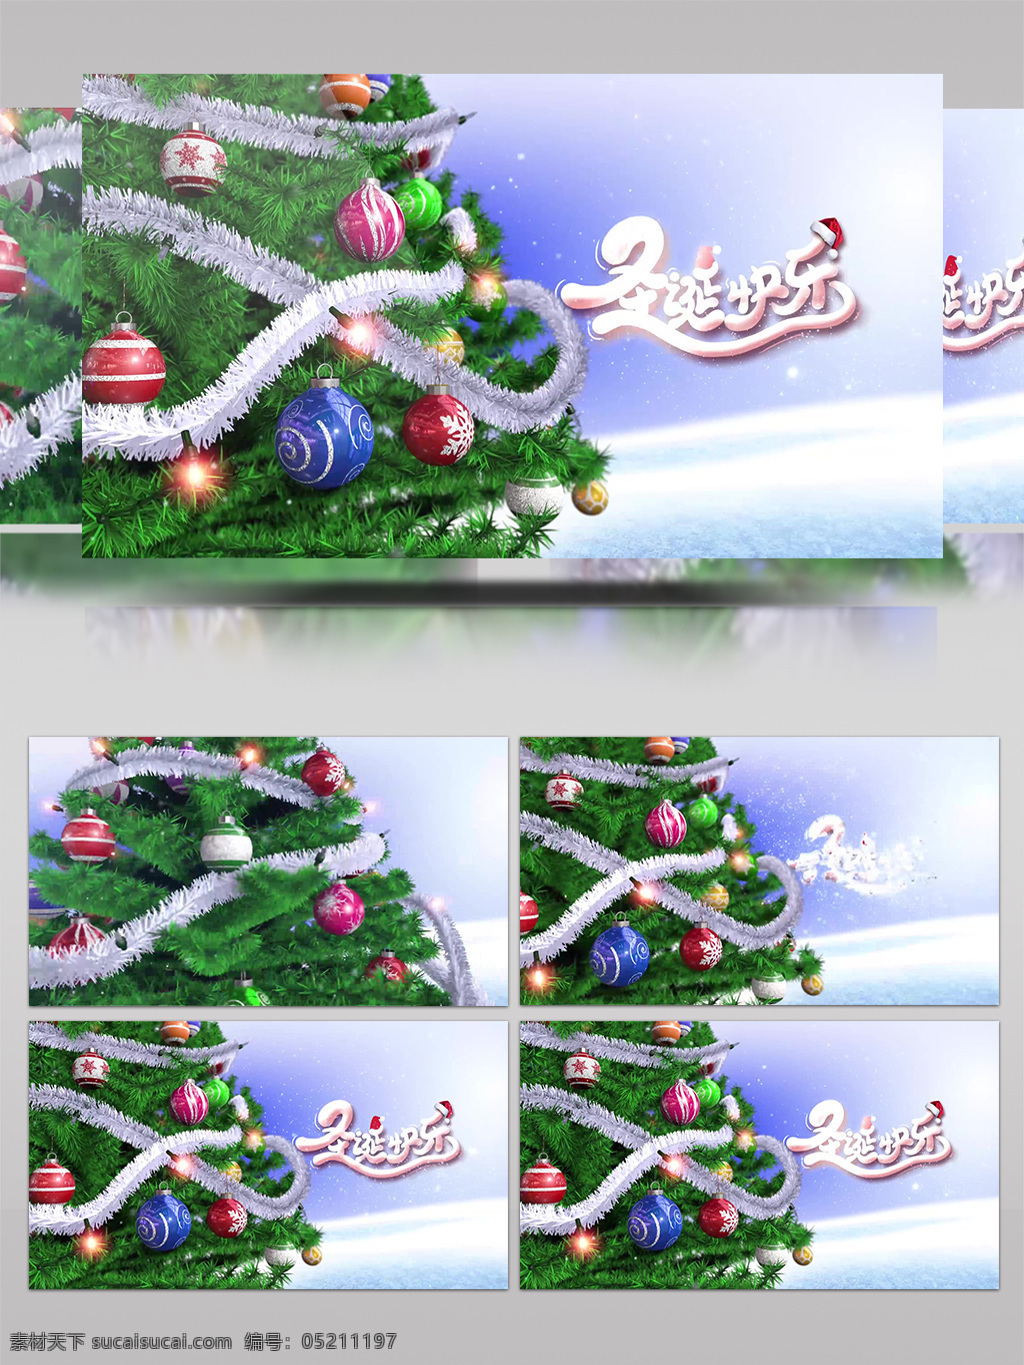 圣诞树 礼物 圣诞节 节日祝福 视频 相册 包装 雪景 雪花 片头 片尾 周年 日 纪念 展示 冰雪 麋鹿 圣诞老人